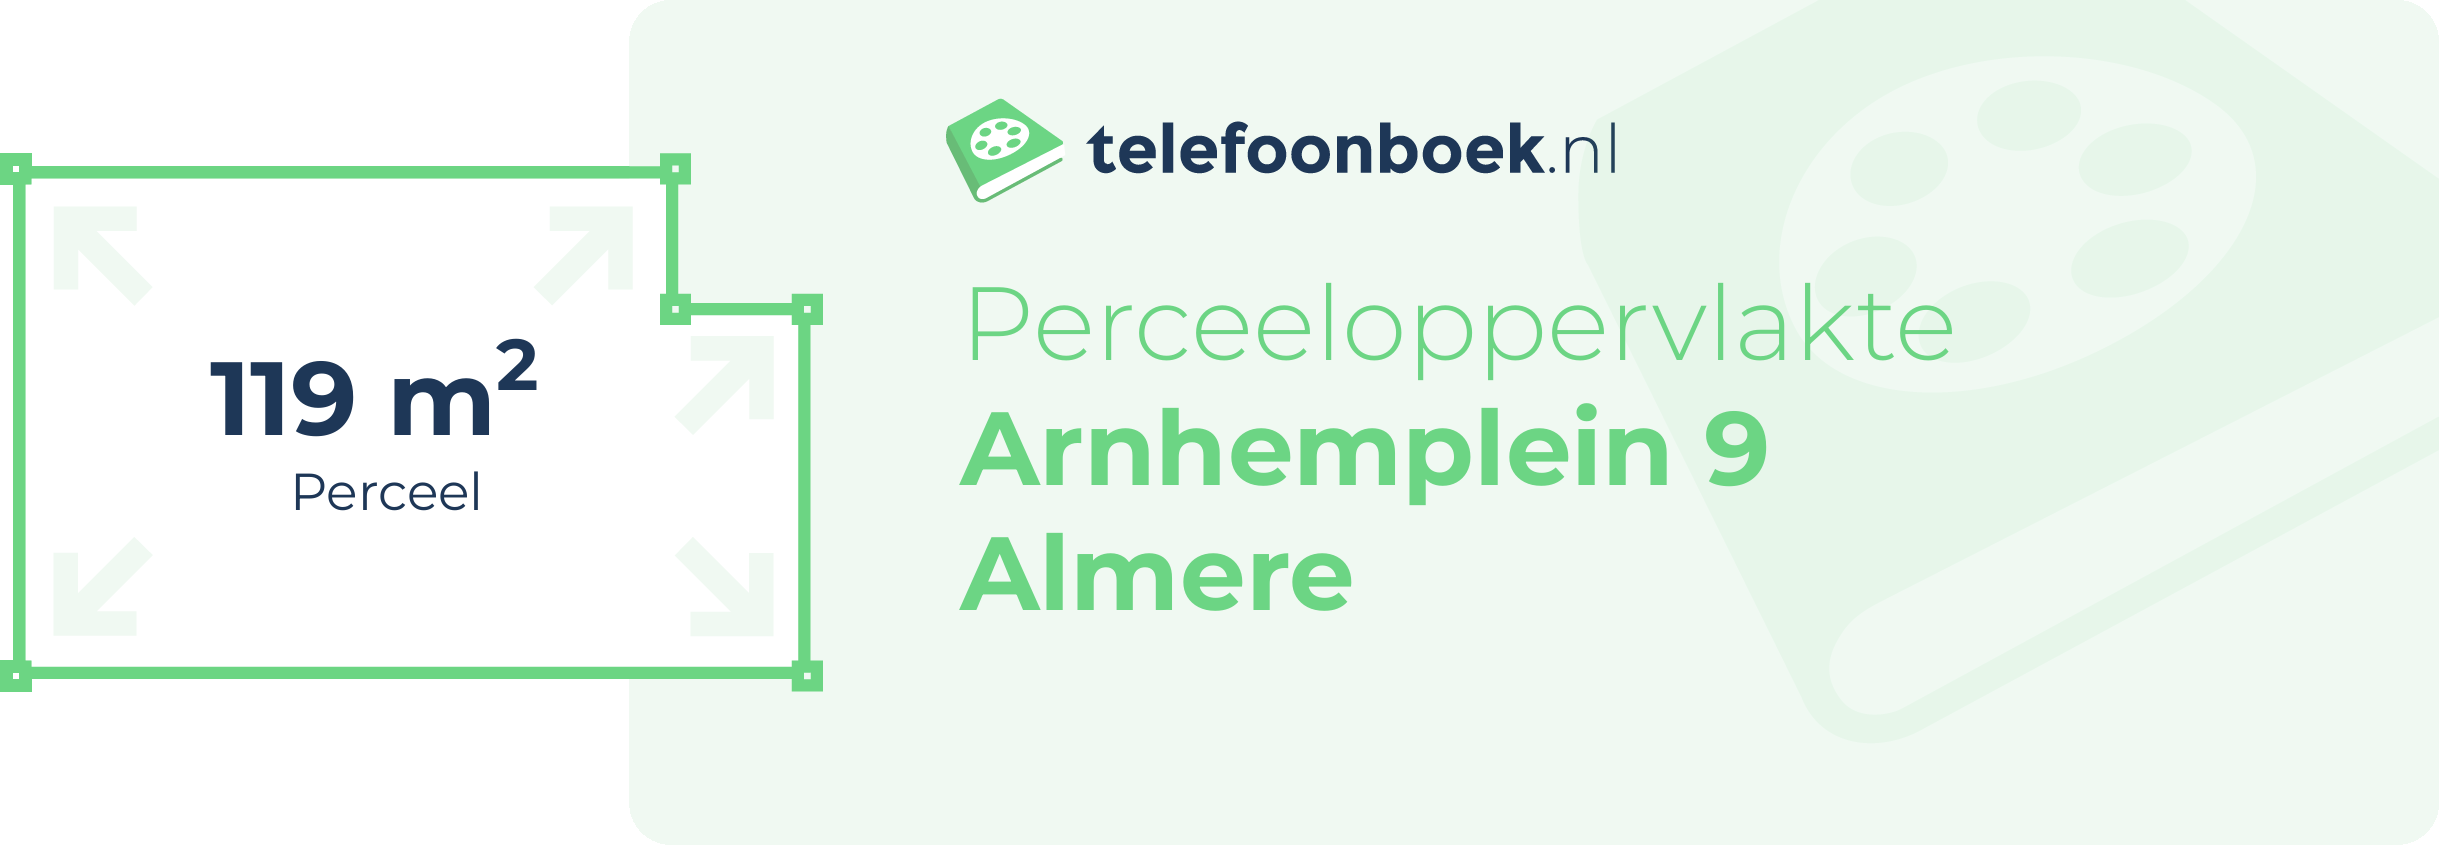 Perceeloppervlakte Arnhemplein 9 Almere